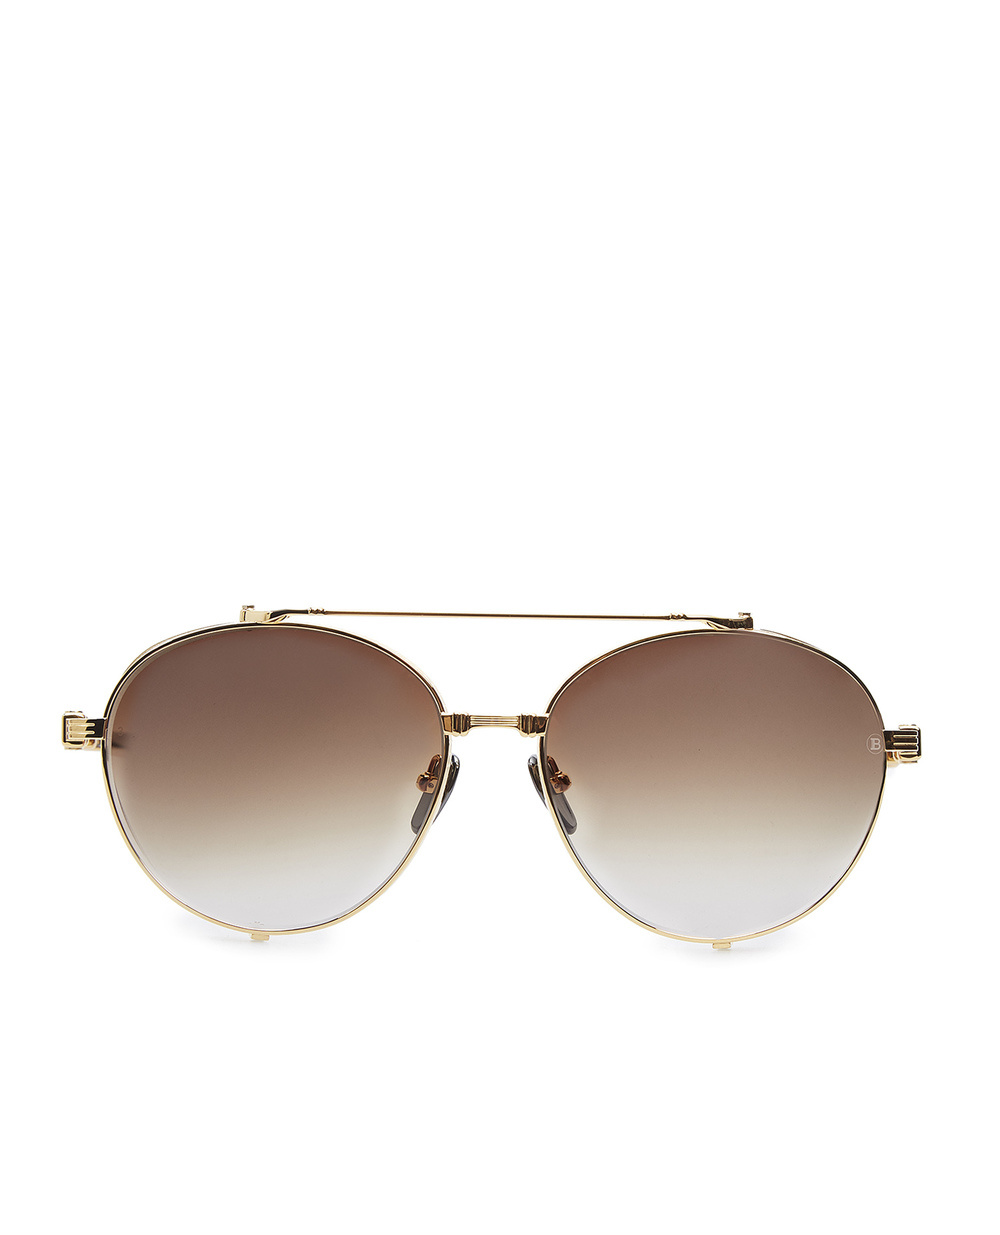 Солнцезащитные очки Balmain BPS-111A-60, золотой цвет • Купить в интернет-магазине Kameron